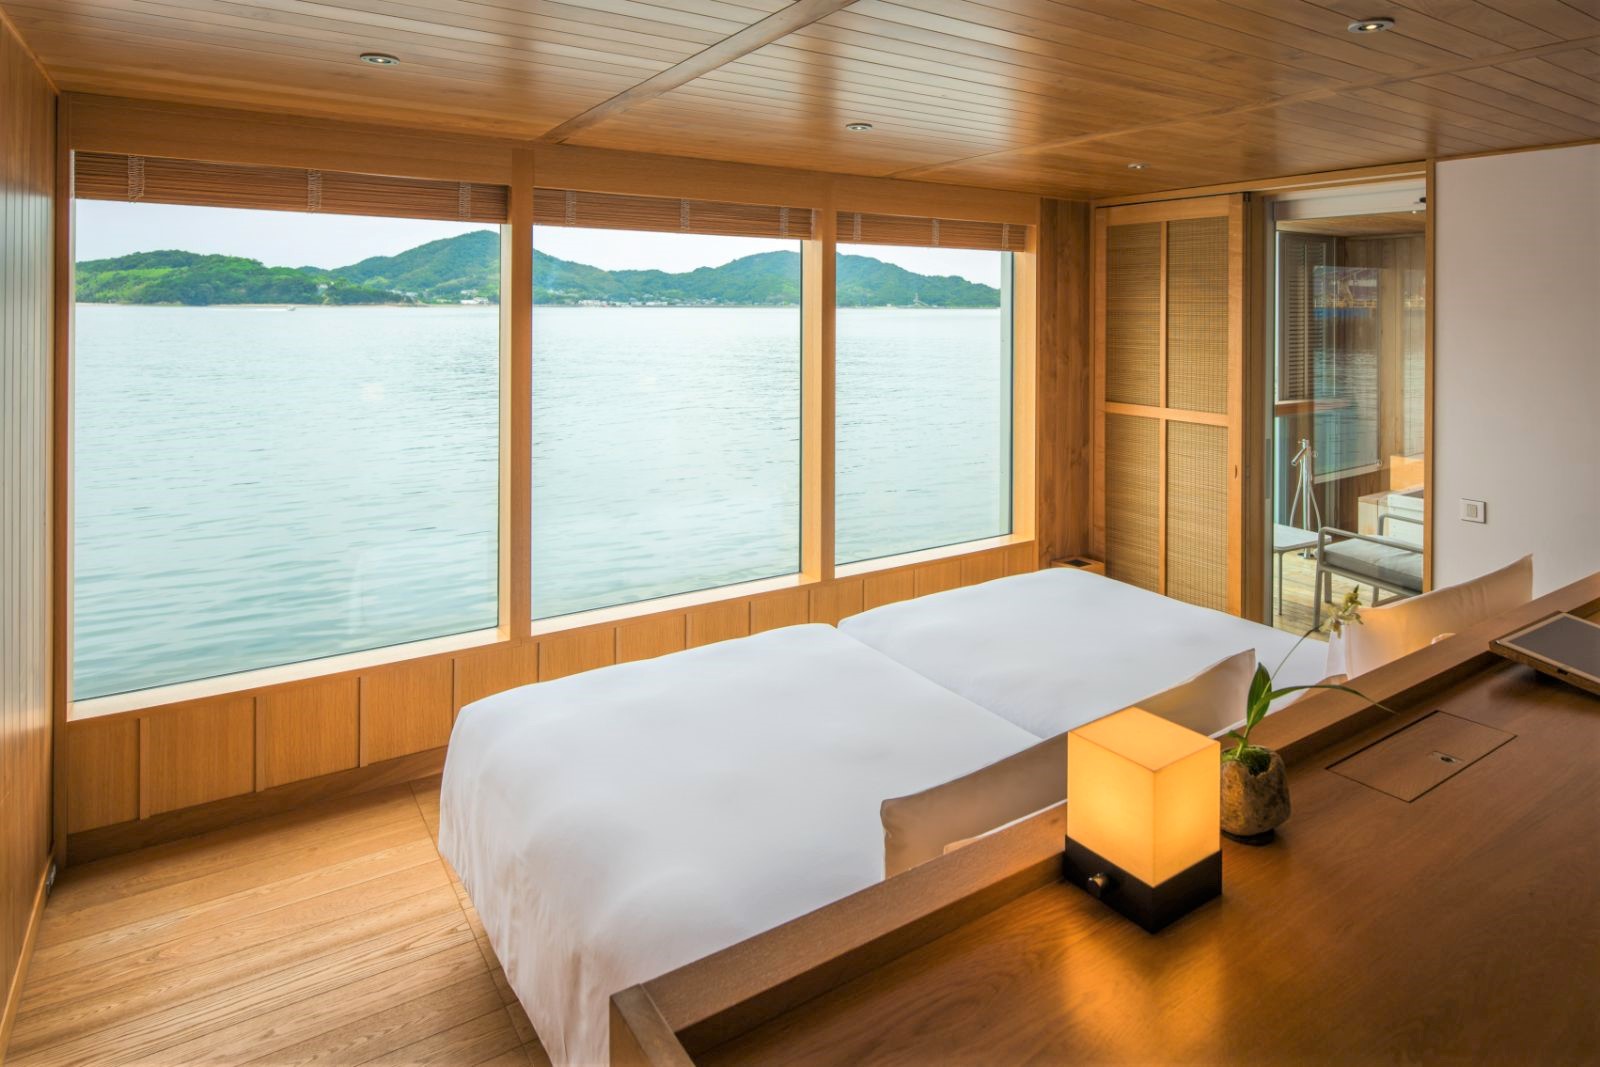 Guest cabin bedroom onboard guntû in Japan's Seto Inland Sea